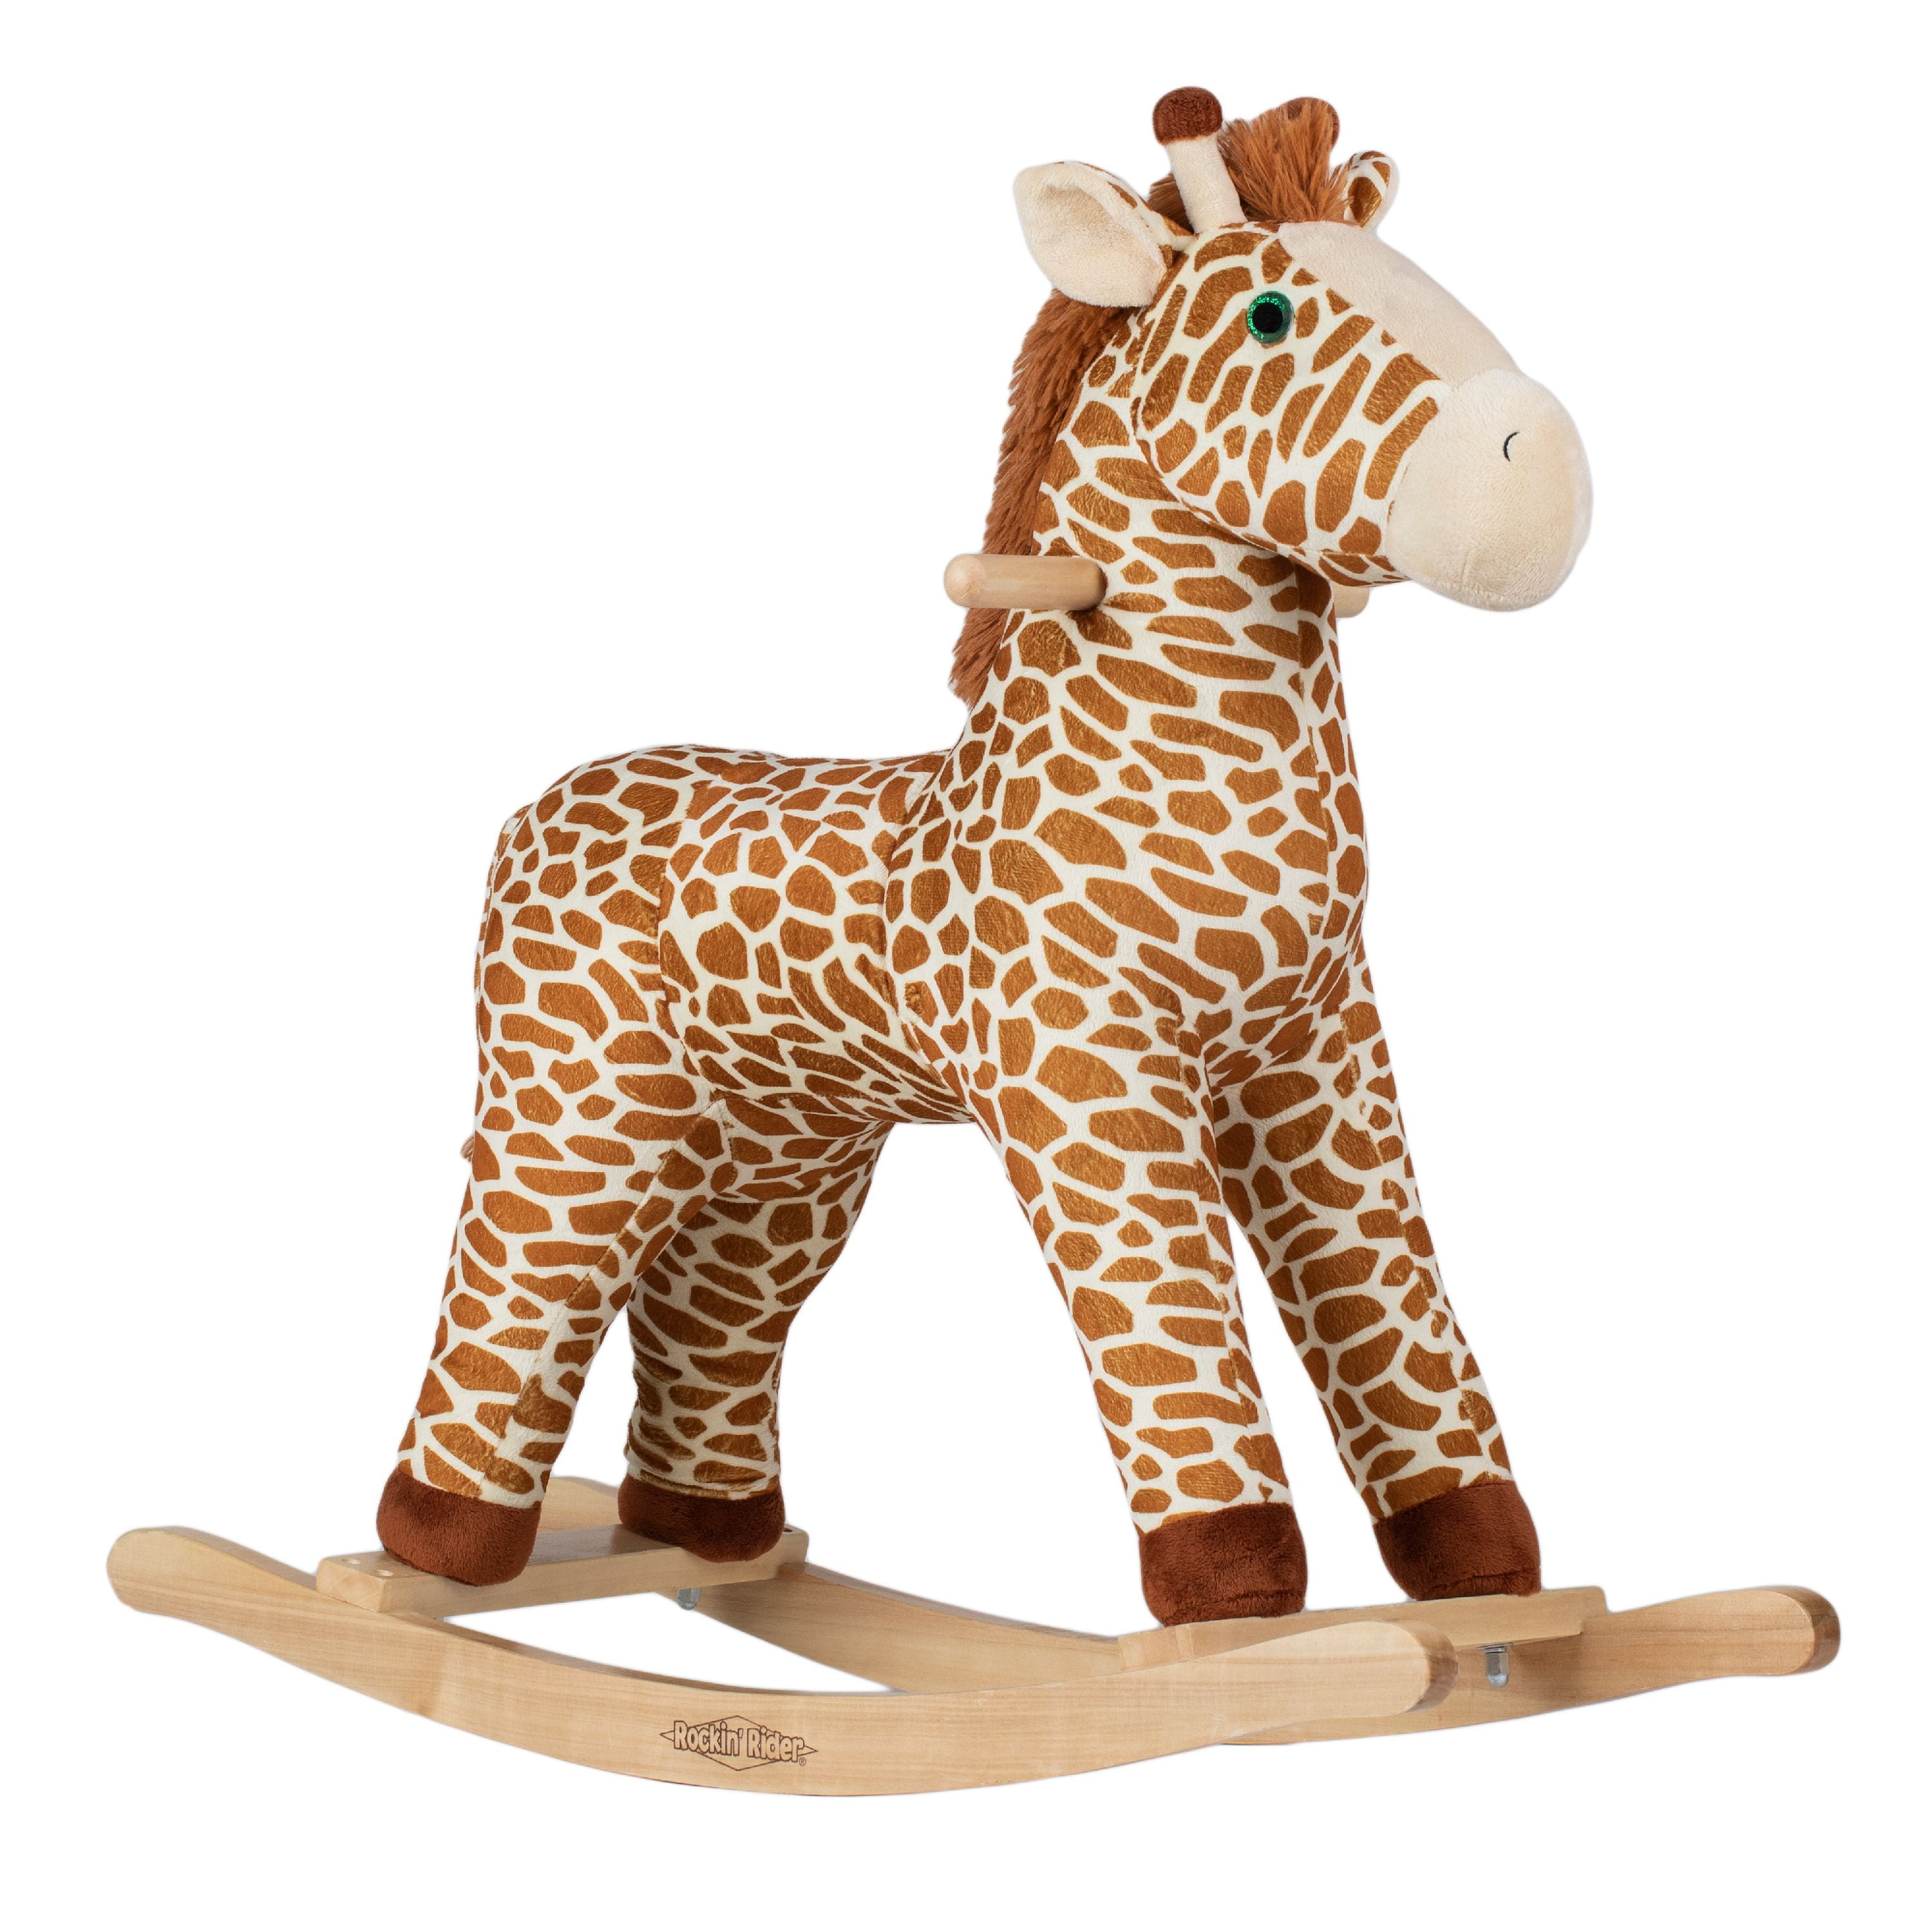 Kids Giraffe Rocking Horse Wood Plush Riding On Rocker Toy Gift W/Music Moving 